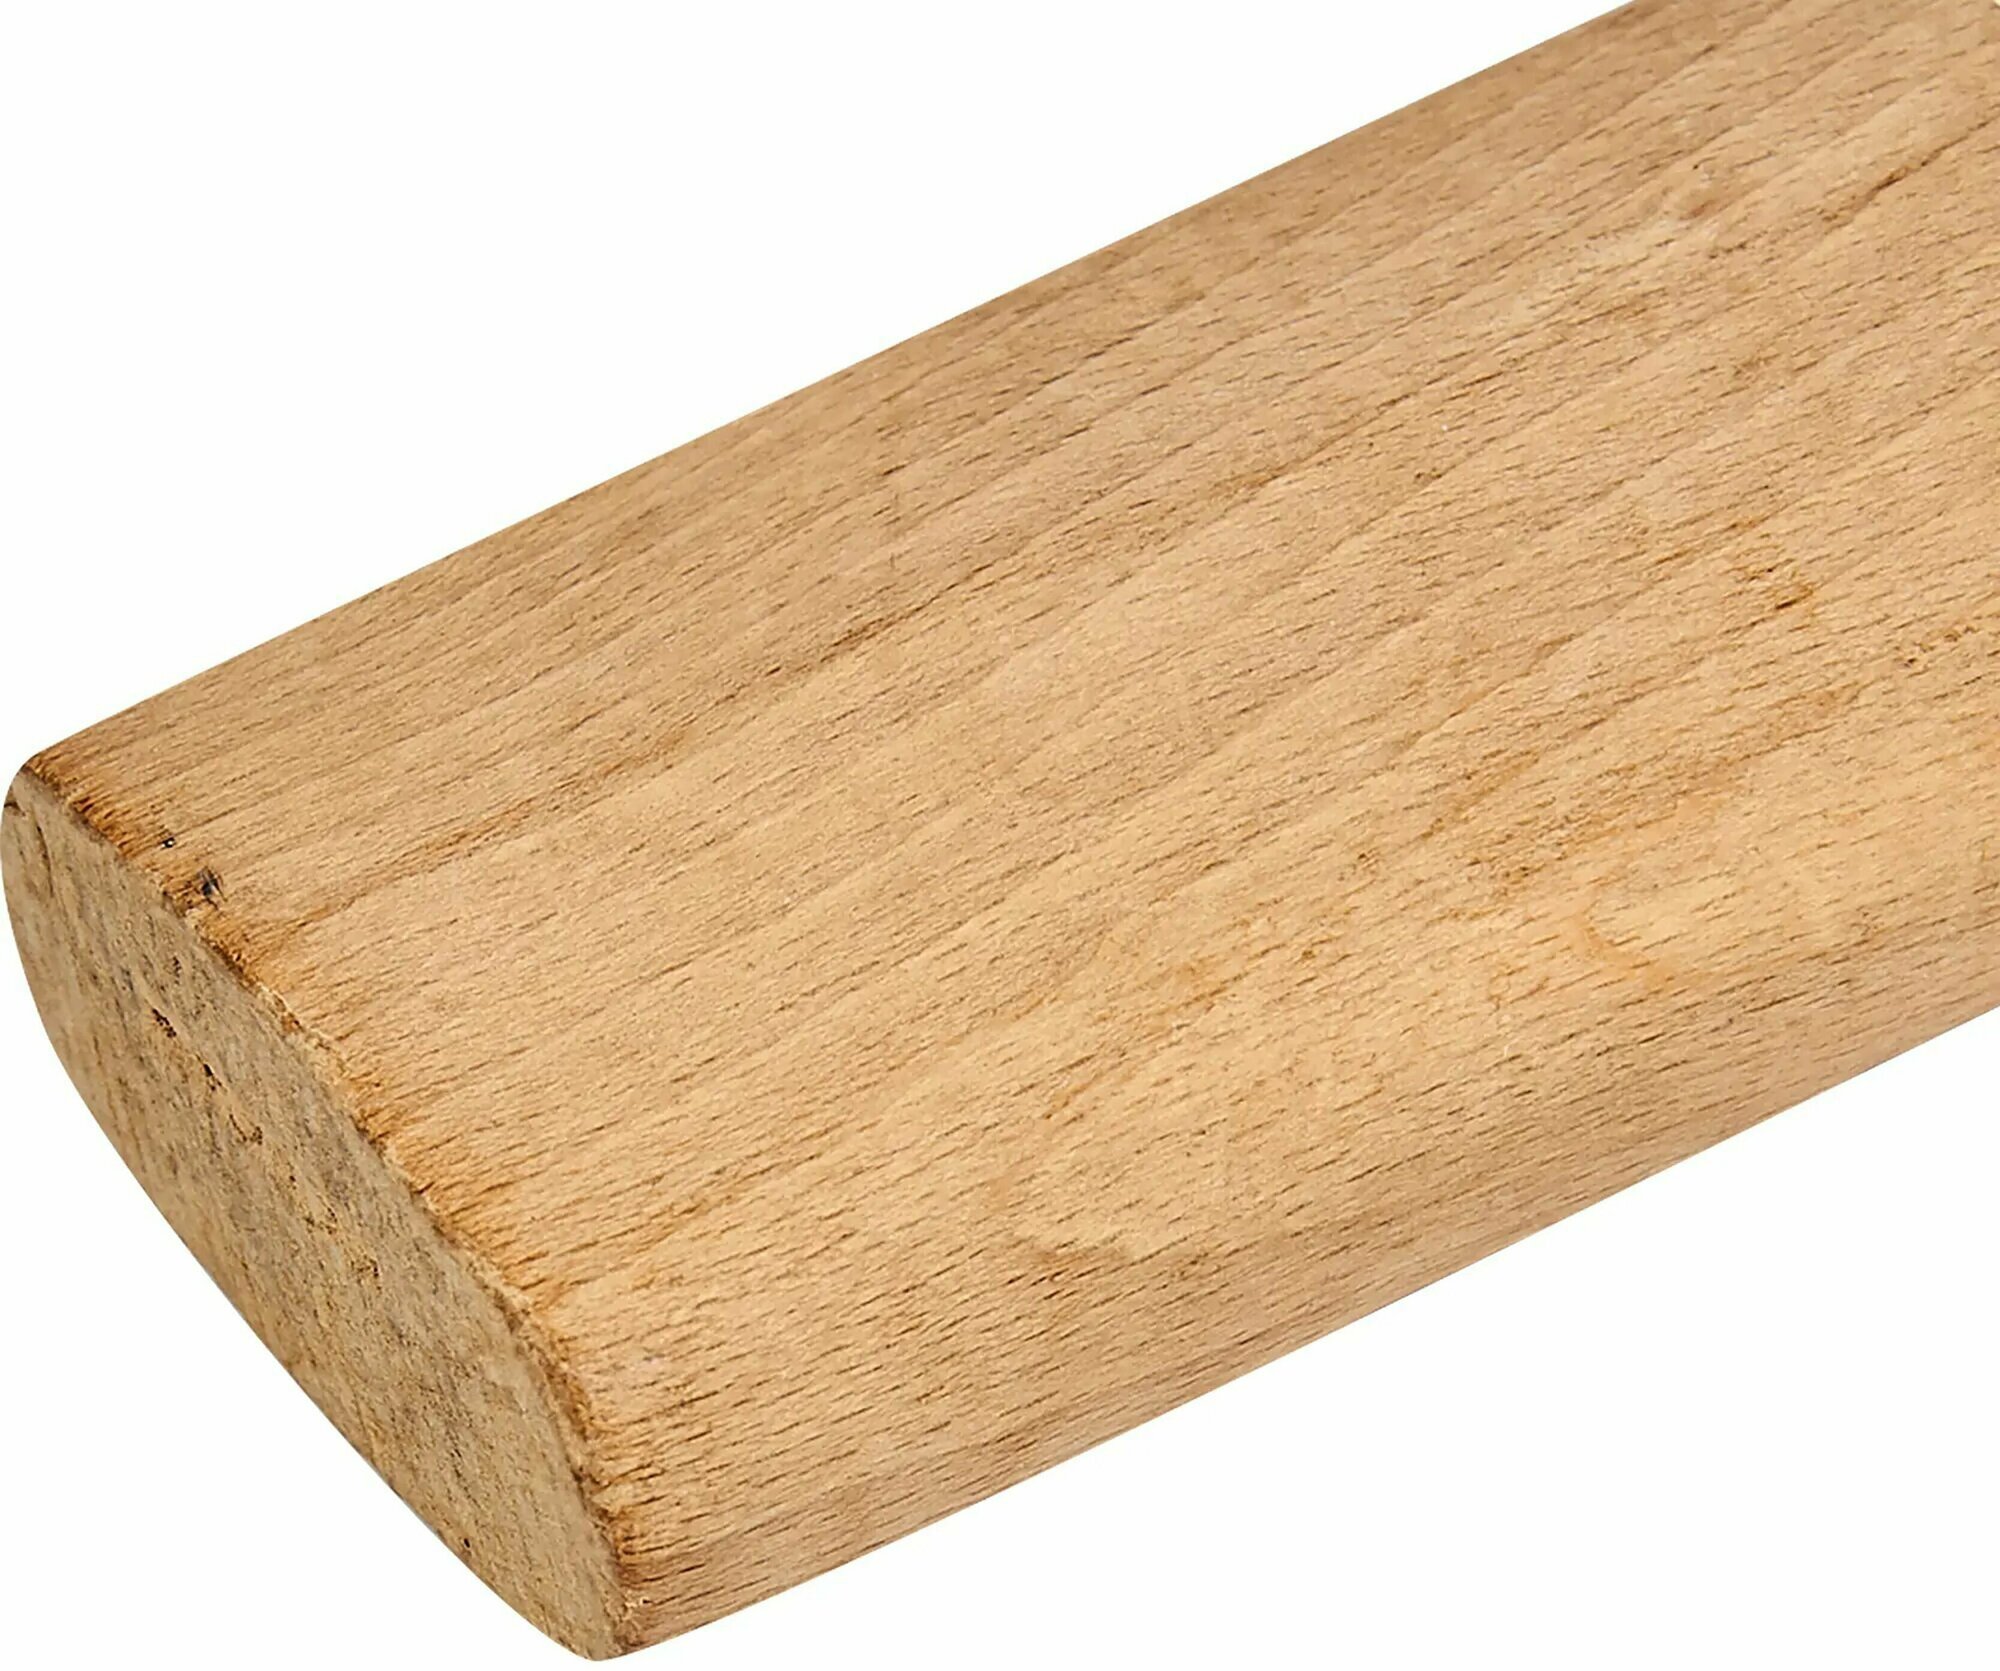 Топорище буковое малое, длина 400 мм. Деревянная рукоятка для рубки одной или двумя руками, для плотницких и столярных работ или заготовки дров - фотография № 5